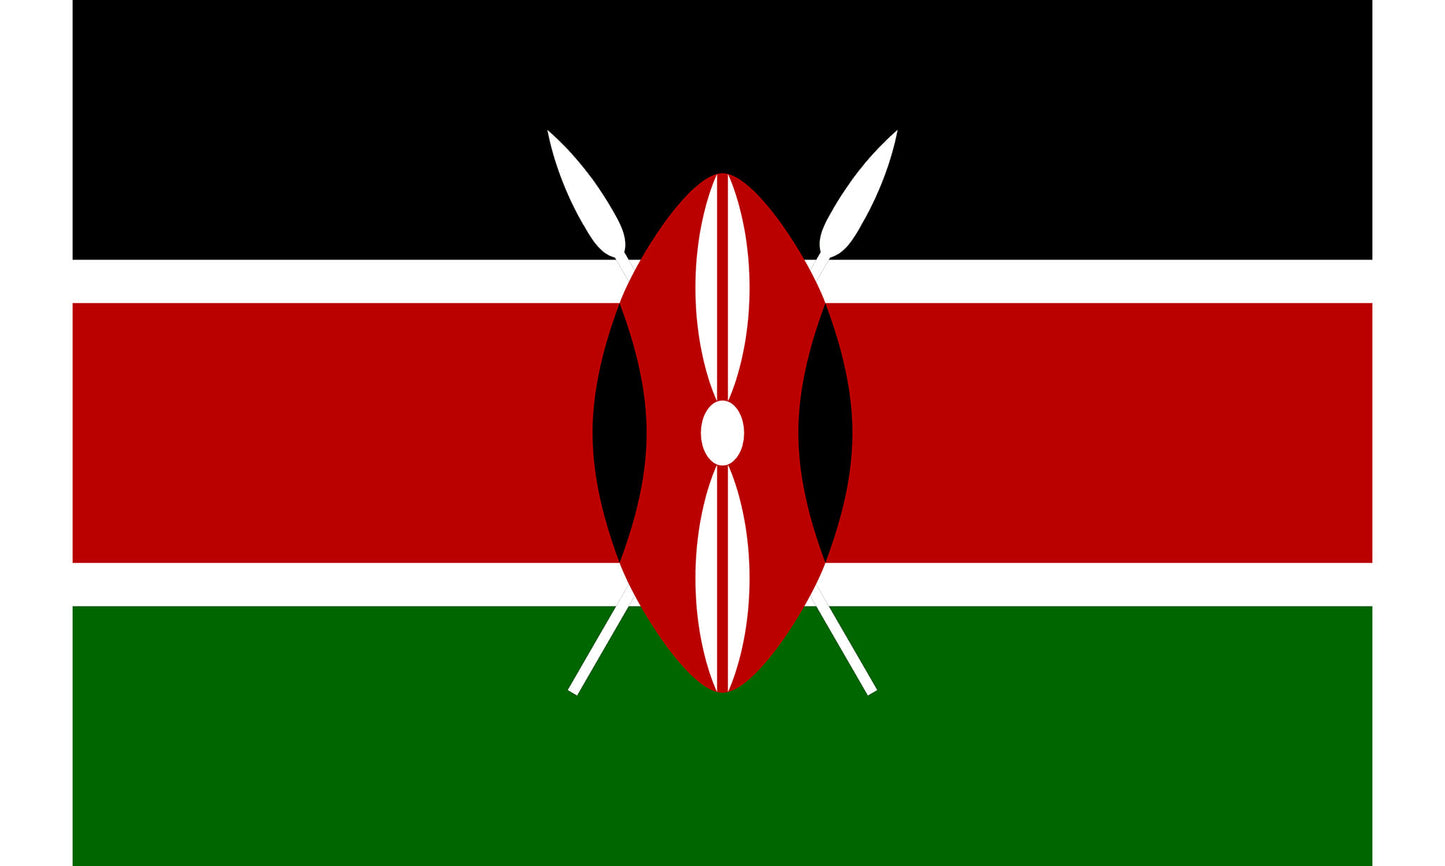 INR-KEN-15x22-2 - государственный флаг Кении, размер: 15х22 см, материал: атлас. Печать с двух сторон. Подставка и шток приобретаются отдельно